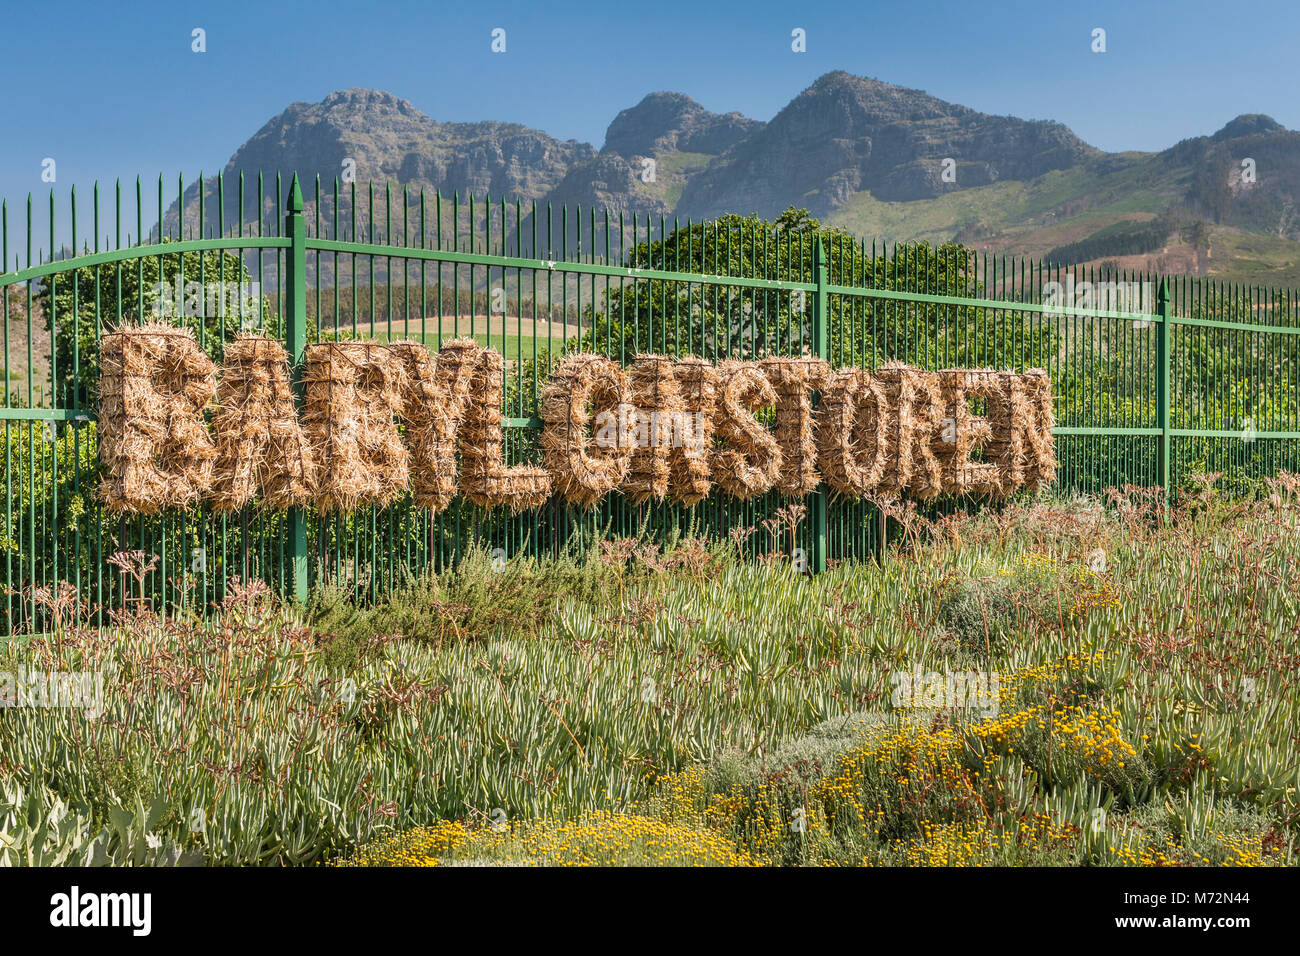 Dekorative Eingang Babylonstoren Gardens in der Nähe von Paarl in der Provinz Western Cape, Südafrika. Stockfoto